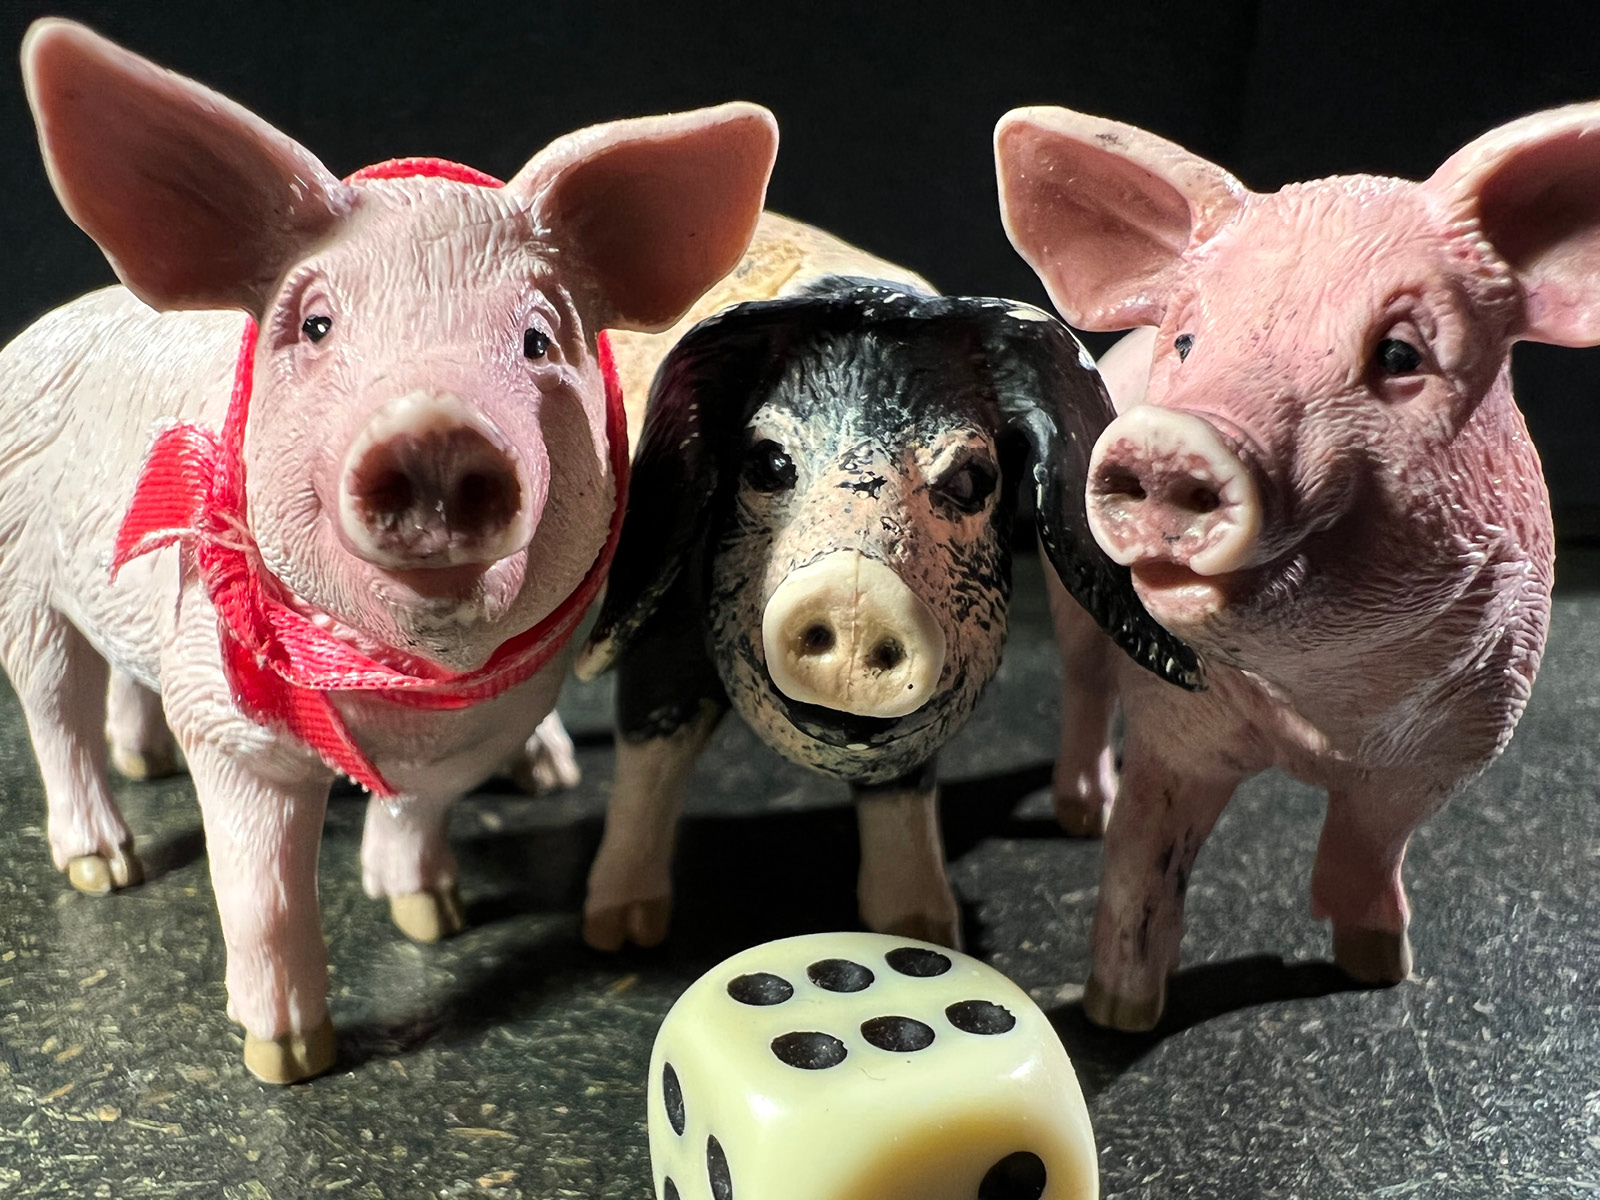 Die Figuren von drei Schweinchen, zwei rosa, eins braun mit Schlappohren schauen freundlich Richtung Kamera. Der Würfel vor ihnen zeigt die Zahl sechs.